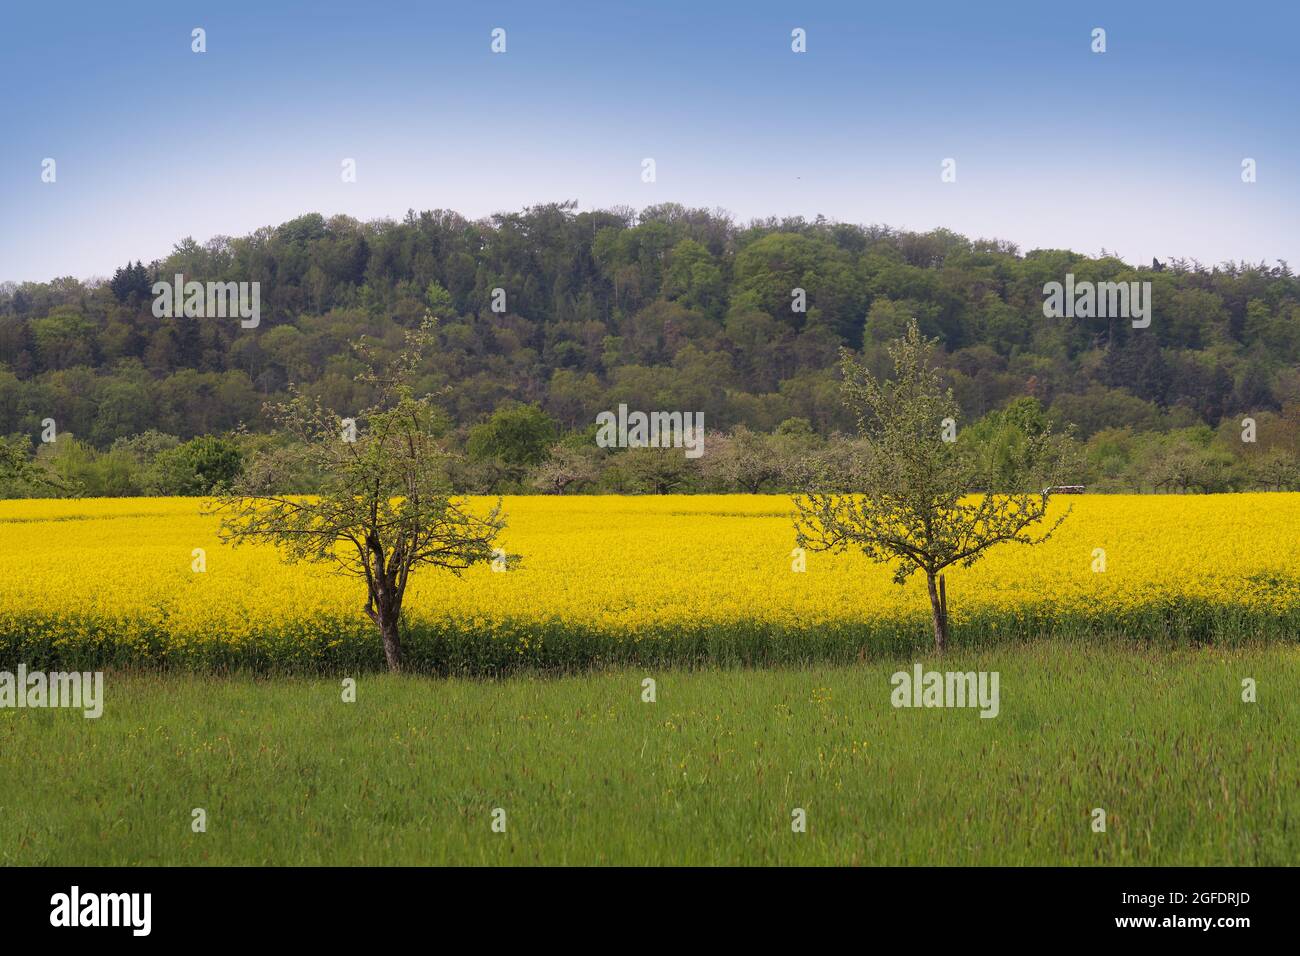 ländliche Szene eines blühenden gelben Rapsfeld mit Wald im Hintergrund an einem sonnigen Tag in Baden-Württemberg Foto Stock